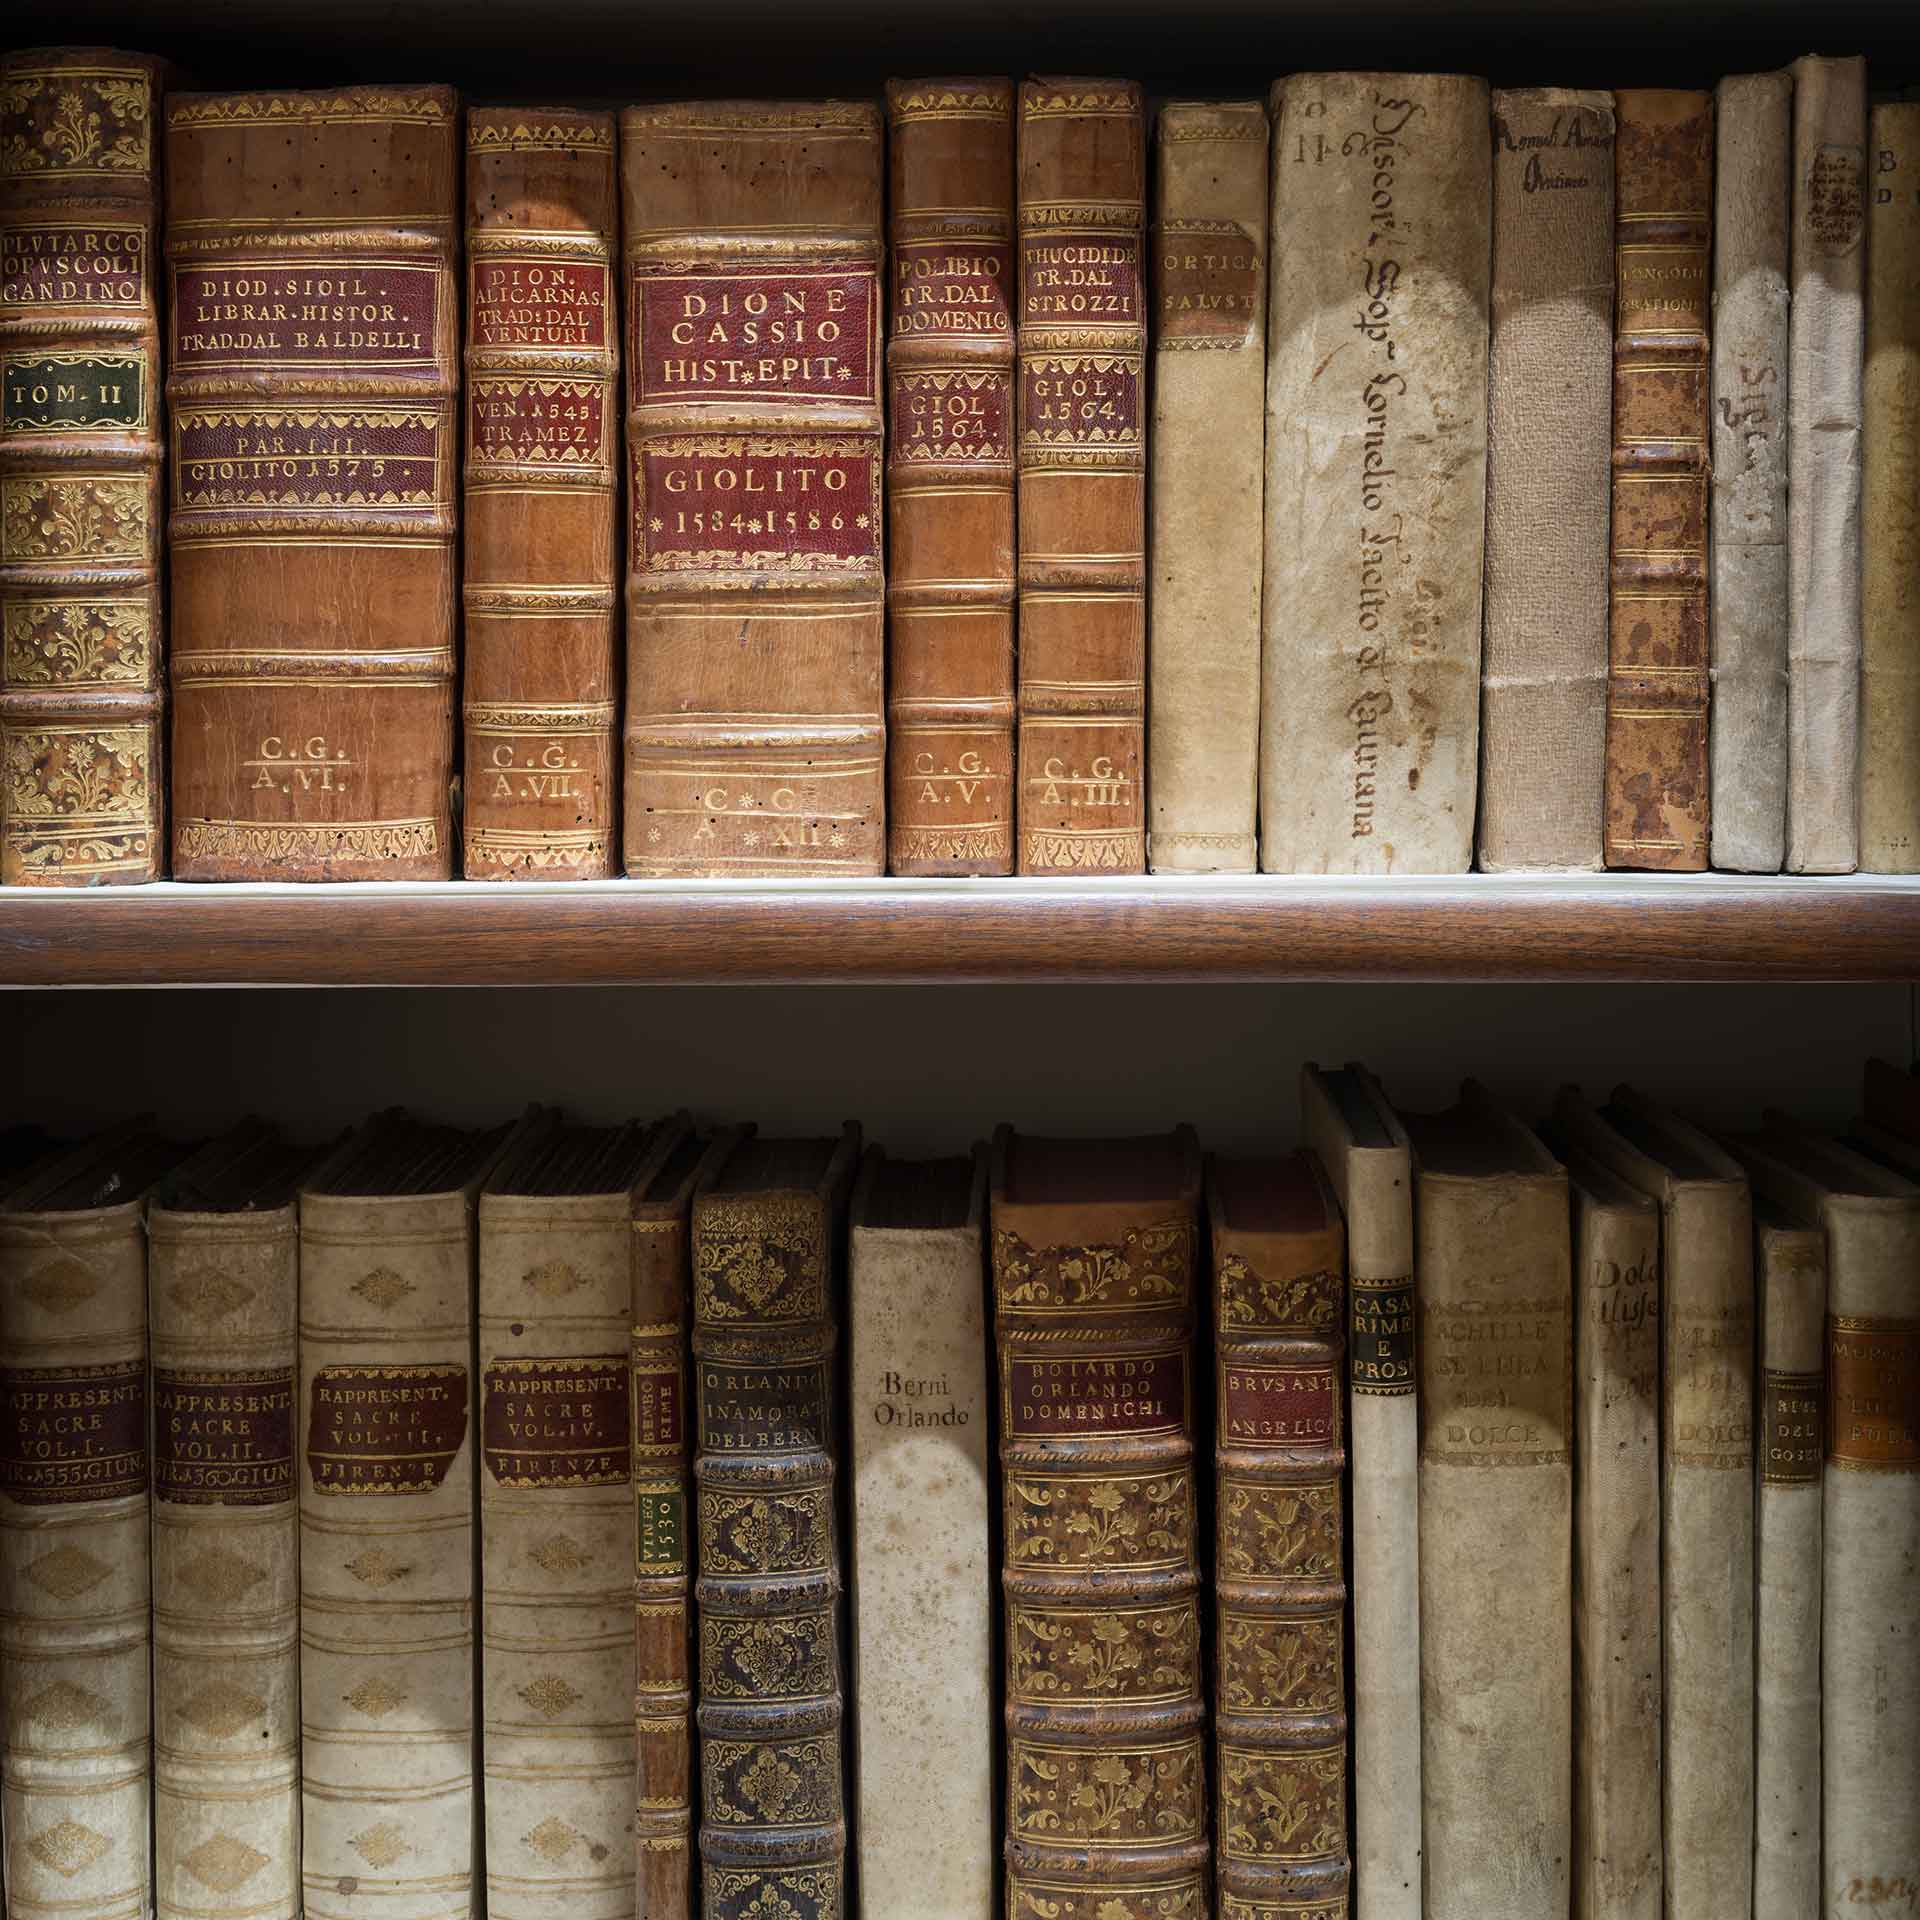 Una libreria piena di libri antichi con rilegature in pelle. I volumi mostrano segni di usura e titoli in lettere dorate incise.